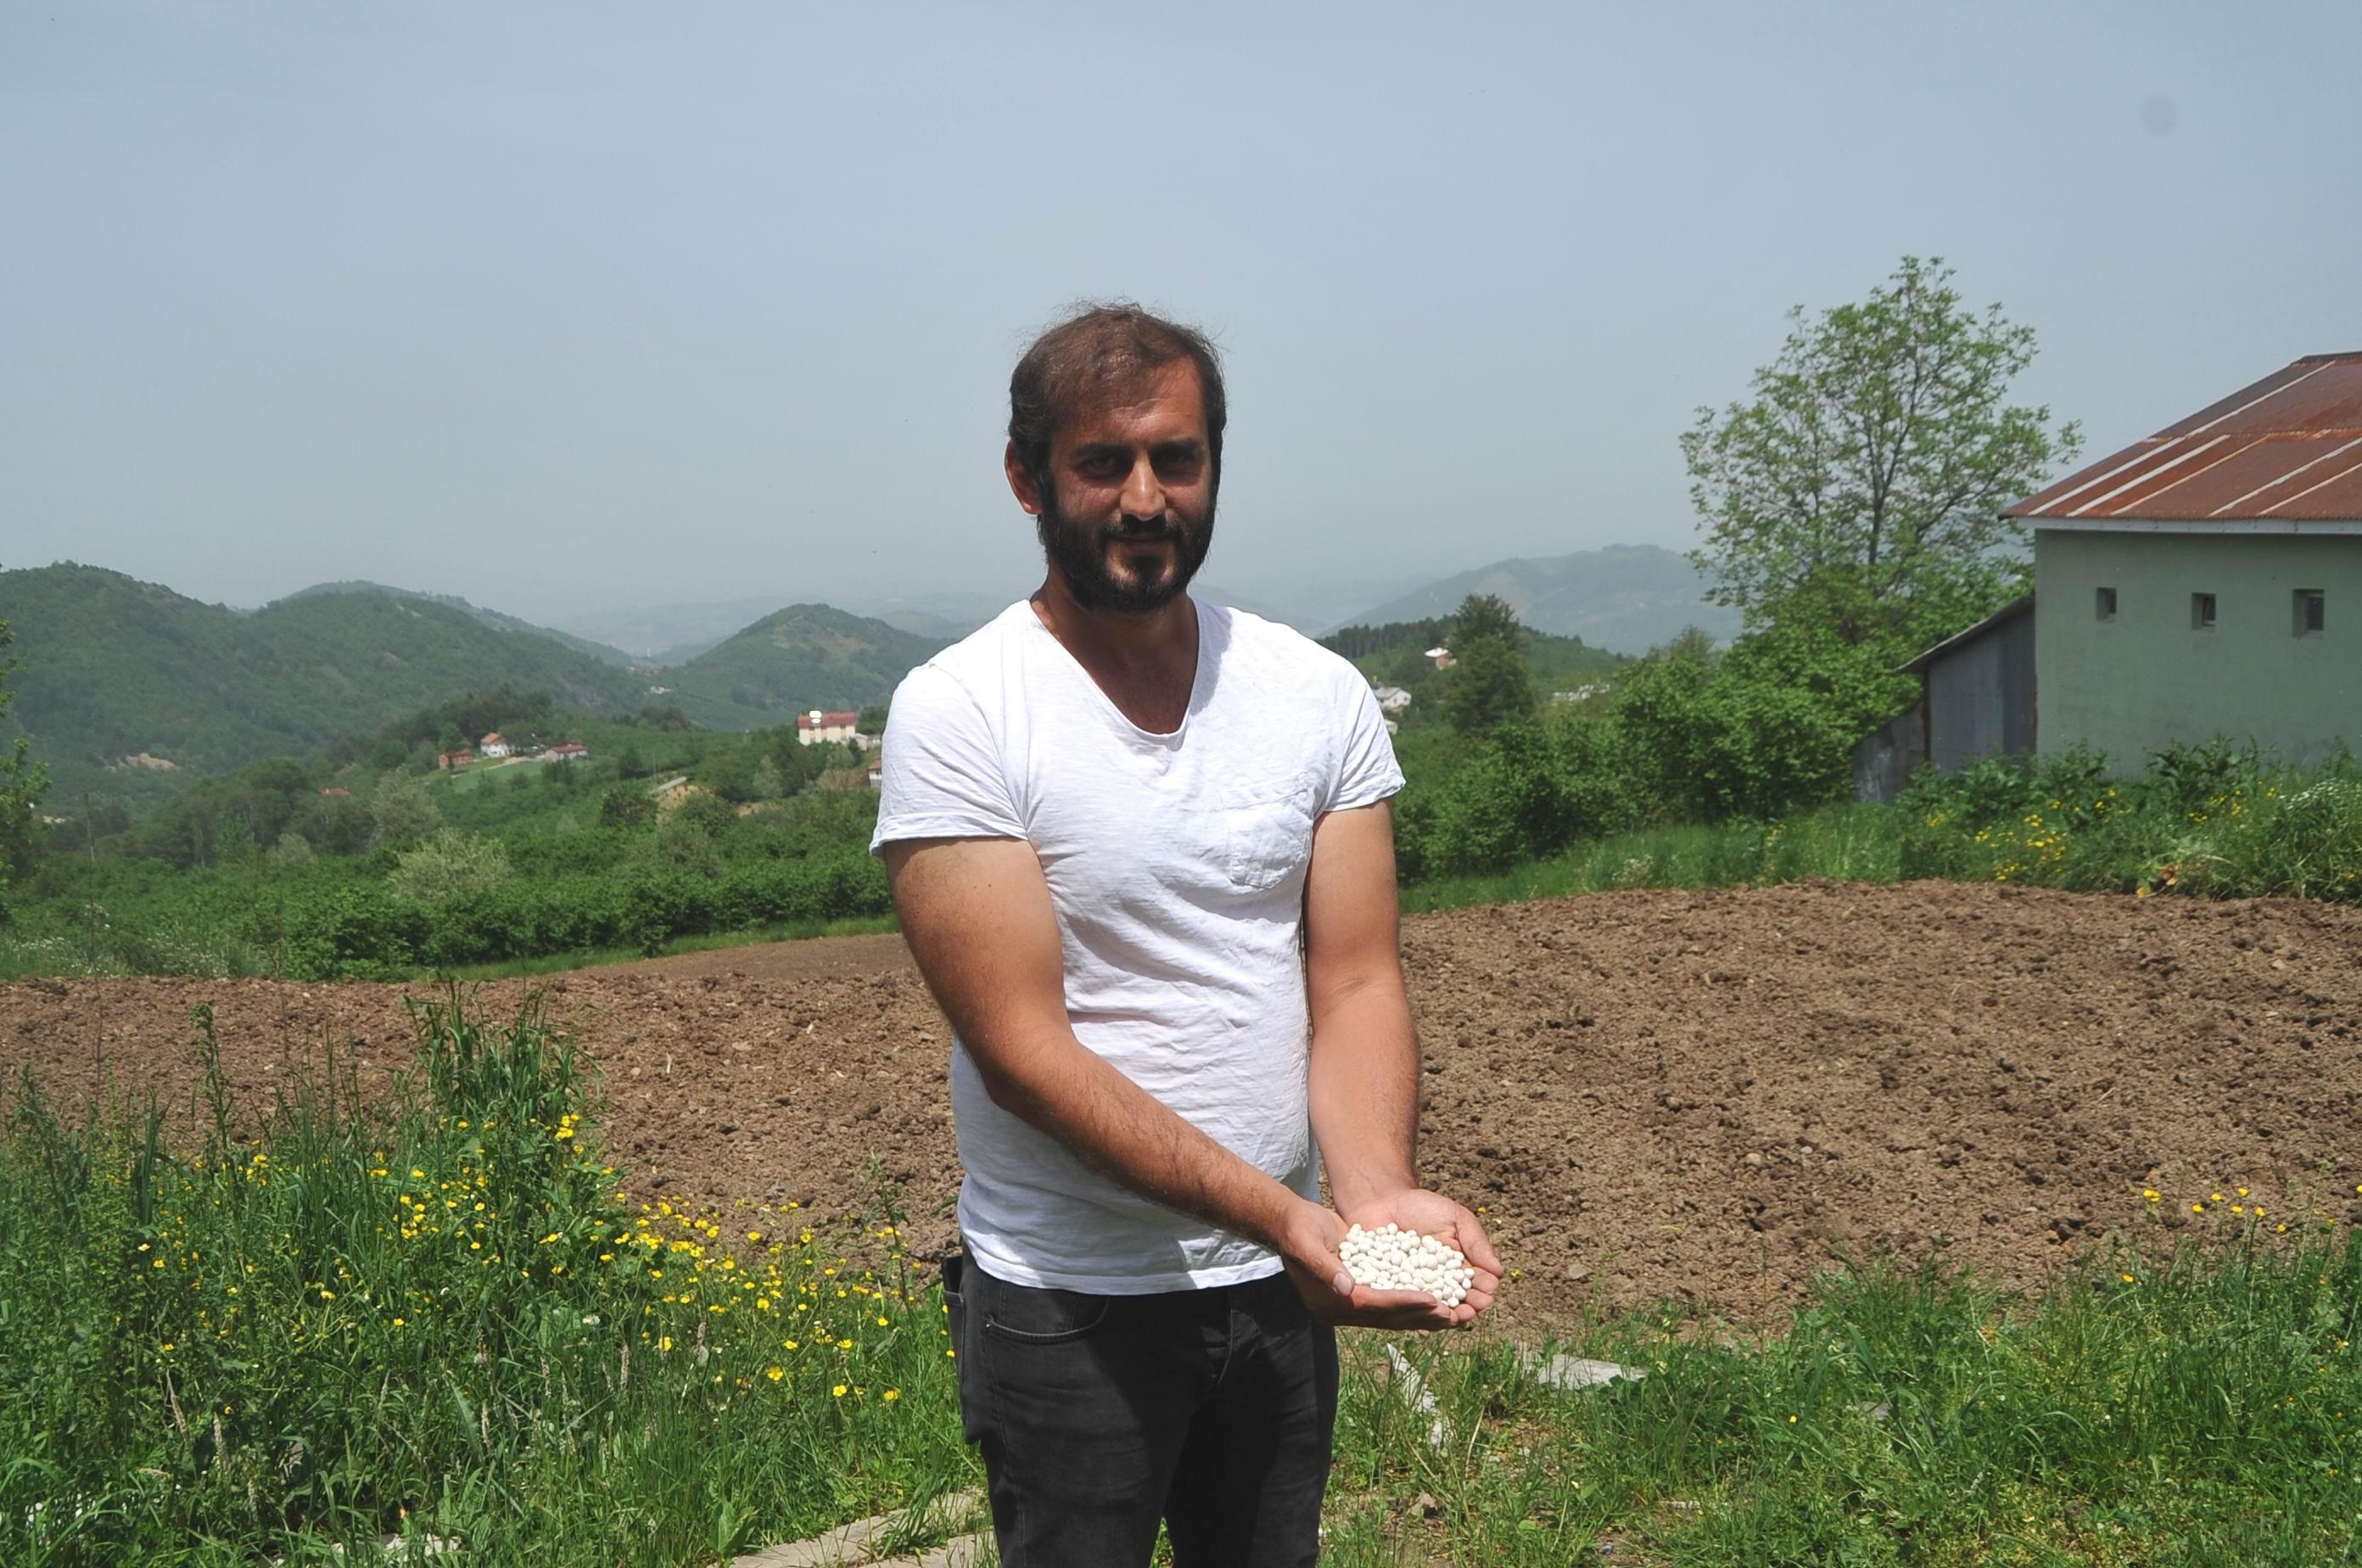 Türkiyede sadece Samsunda yetişen Nebiyan fasulyesi pazara inmeden tarlada satılıyor